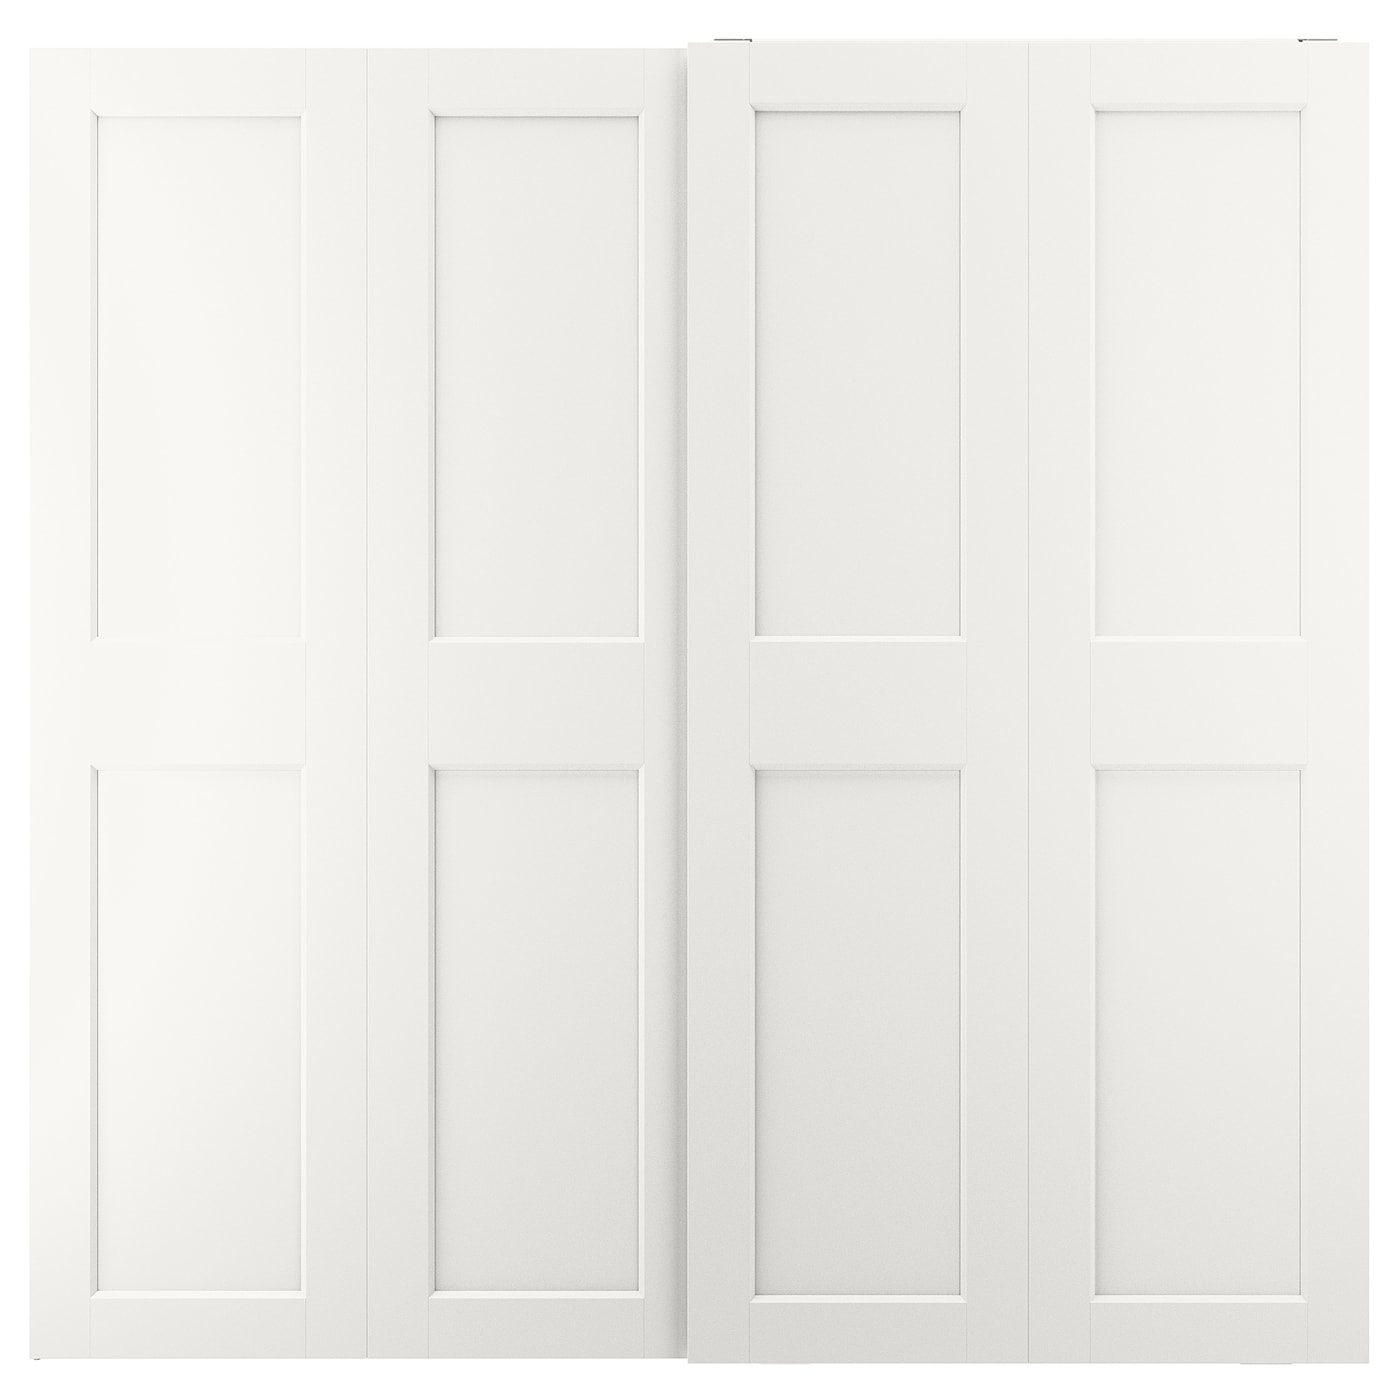 Пара раздвижных дверных рам - IKEA GRIMO /ГРИМО ИКЕА, 200х201 см, белый